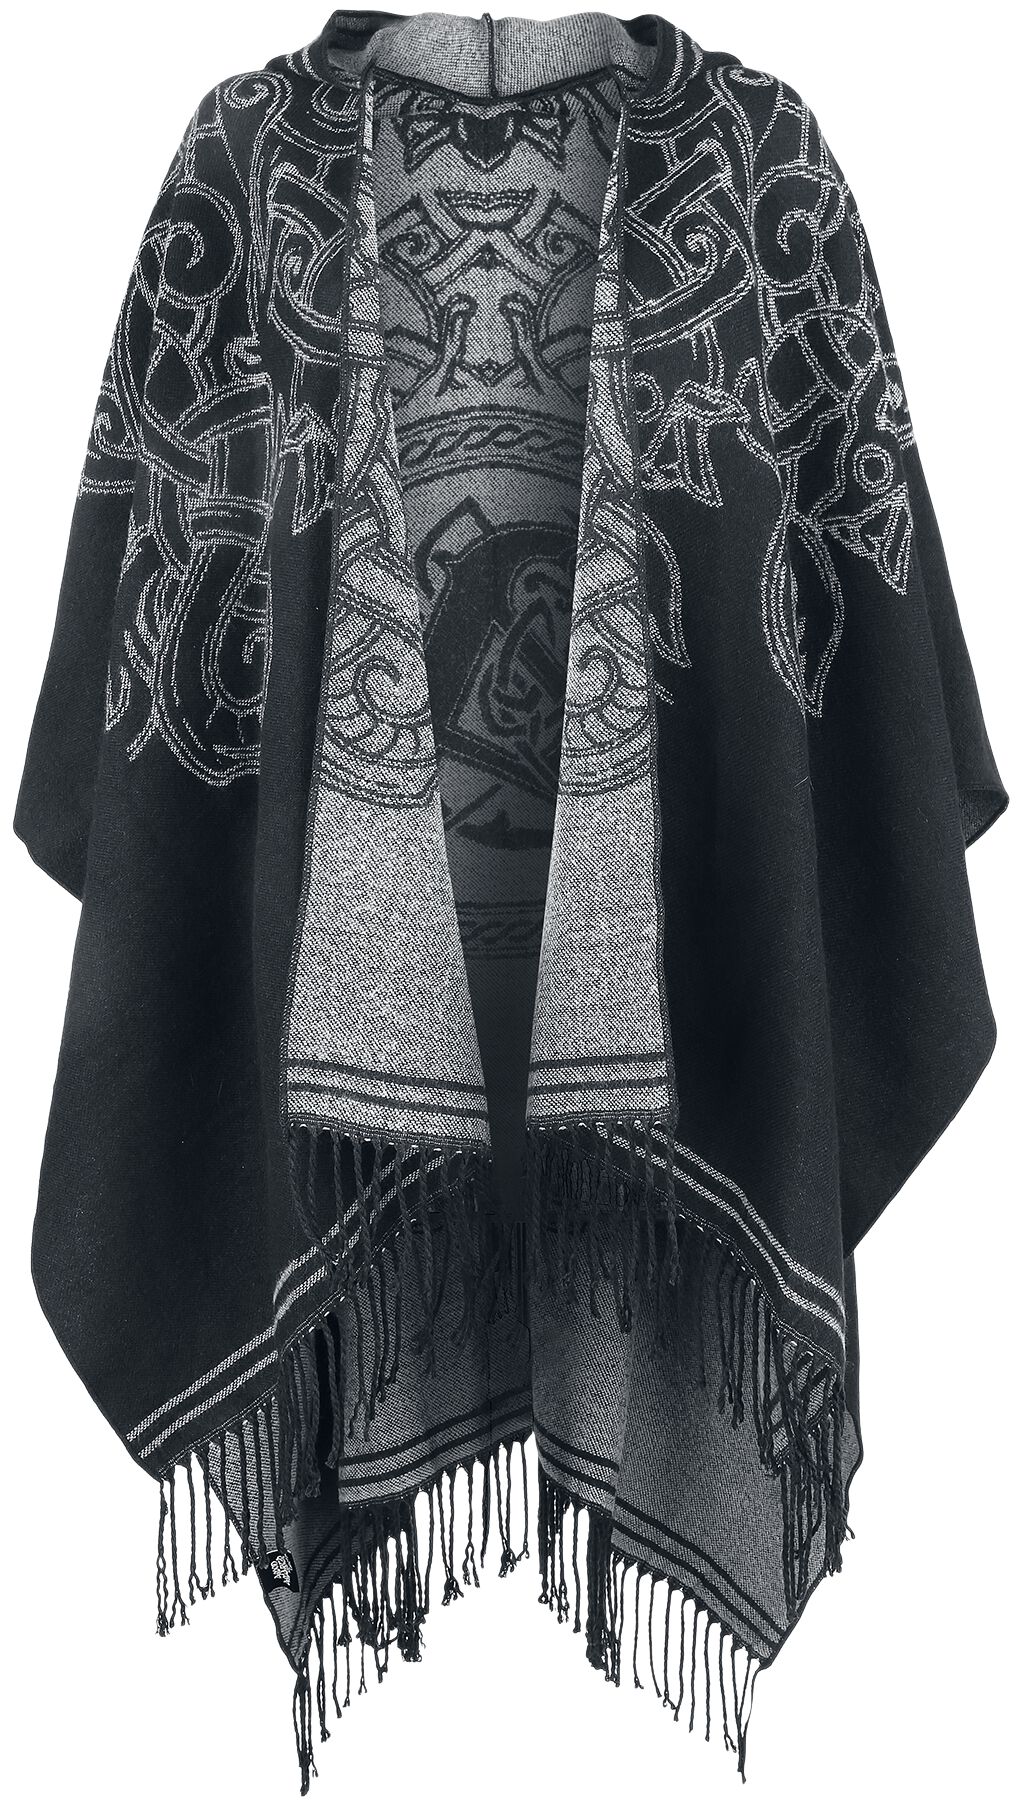 Amon Amarth Cardigan - EMP Signature Collection - one size - für Damen - Größe one size - grau/schwarz  - EMP exklusives Merchandise!